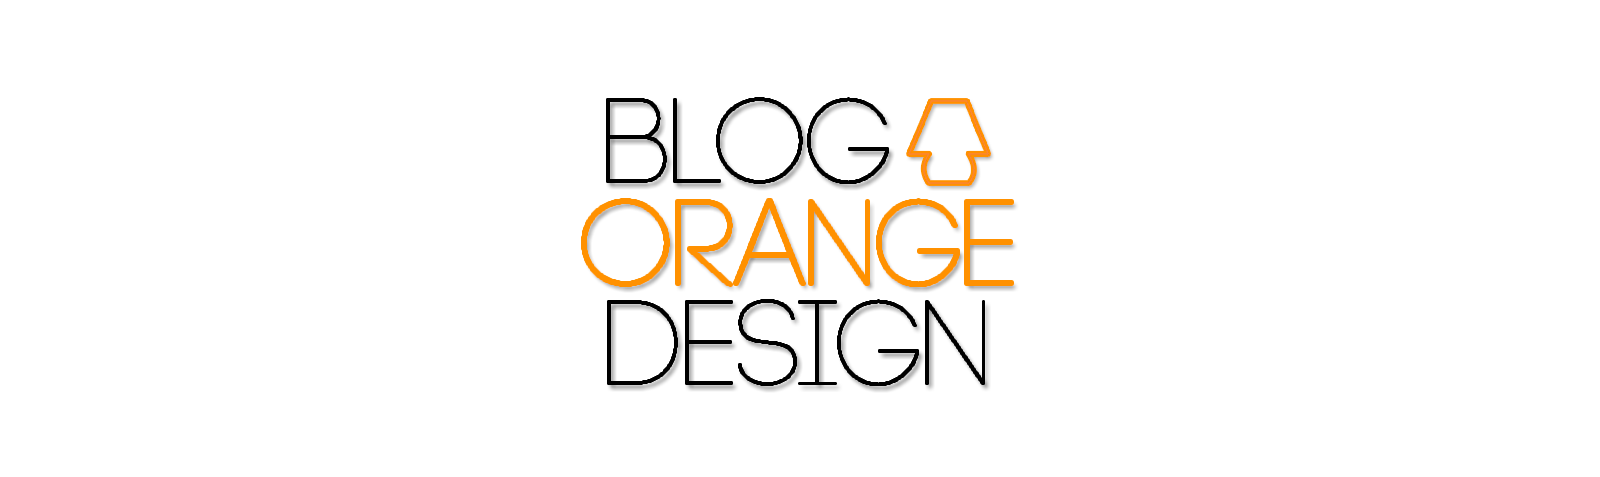 Blog Orange Design